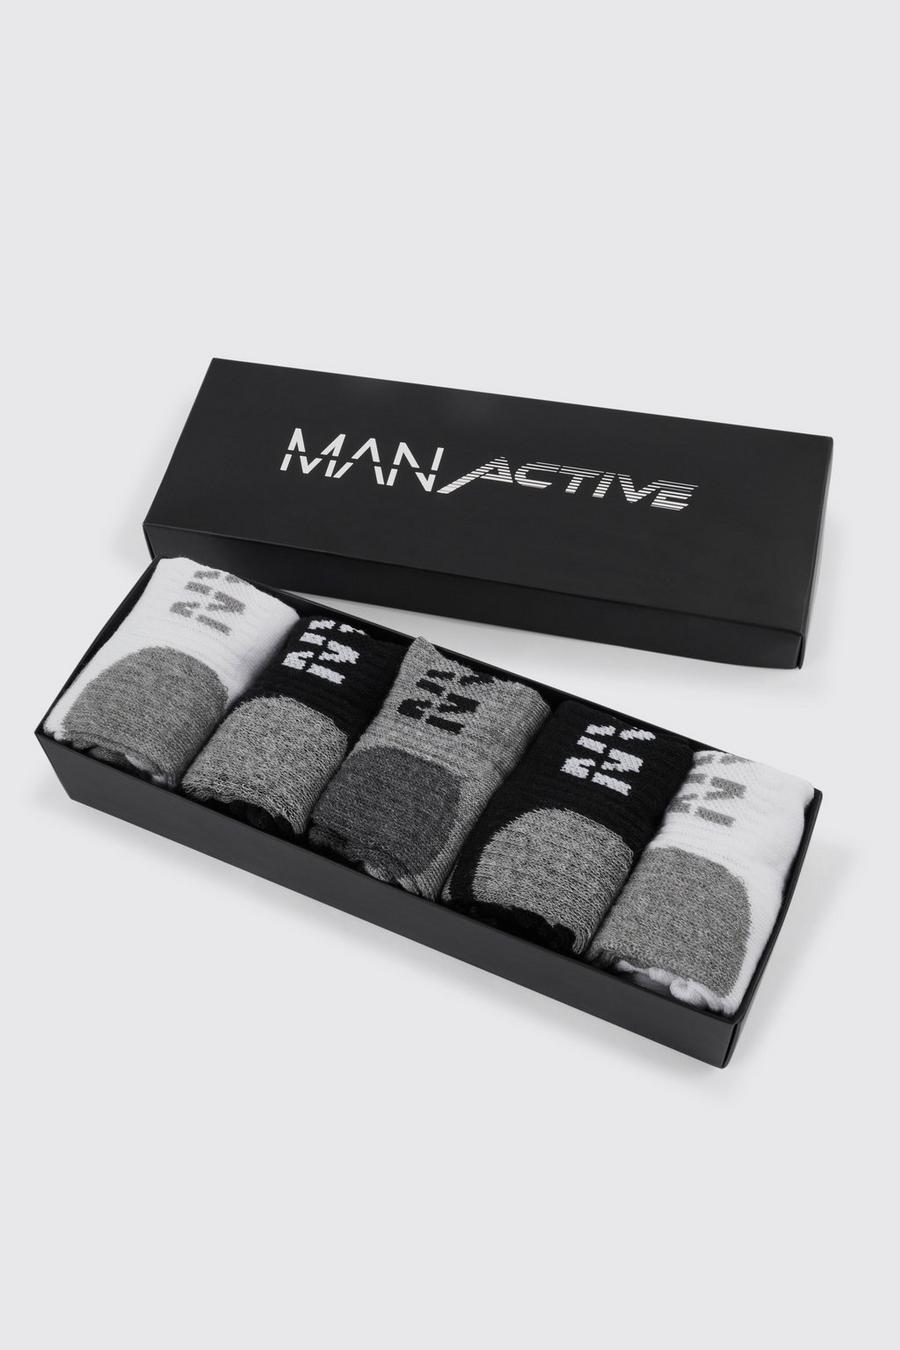 Calzini sportivi Man Active con confezione regalo - set di 5 paia, Multi